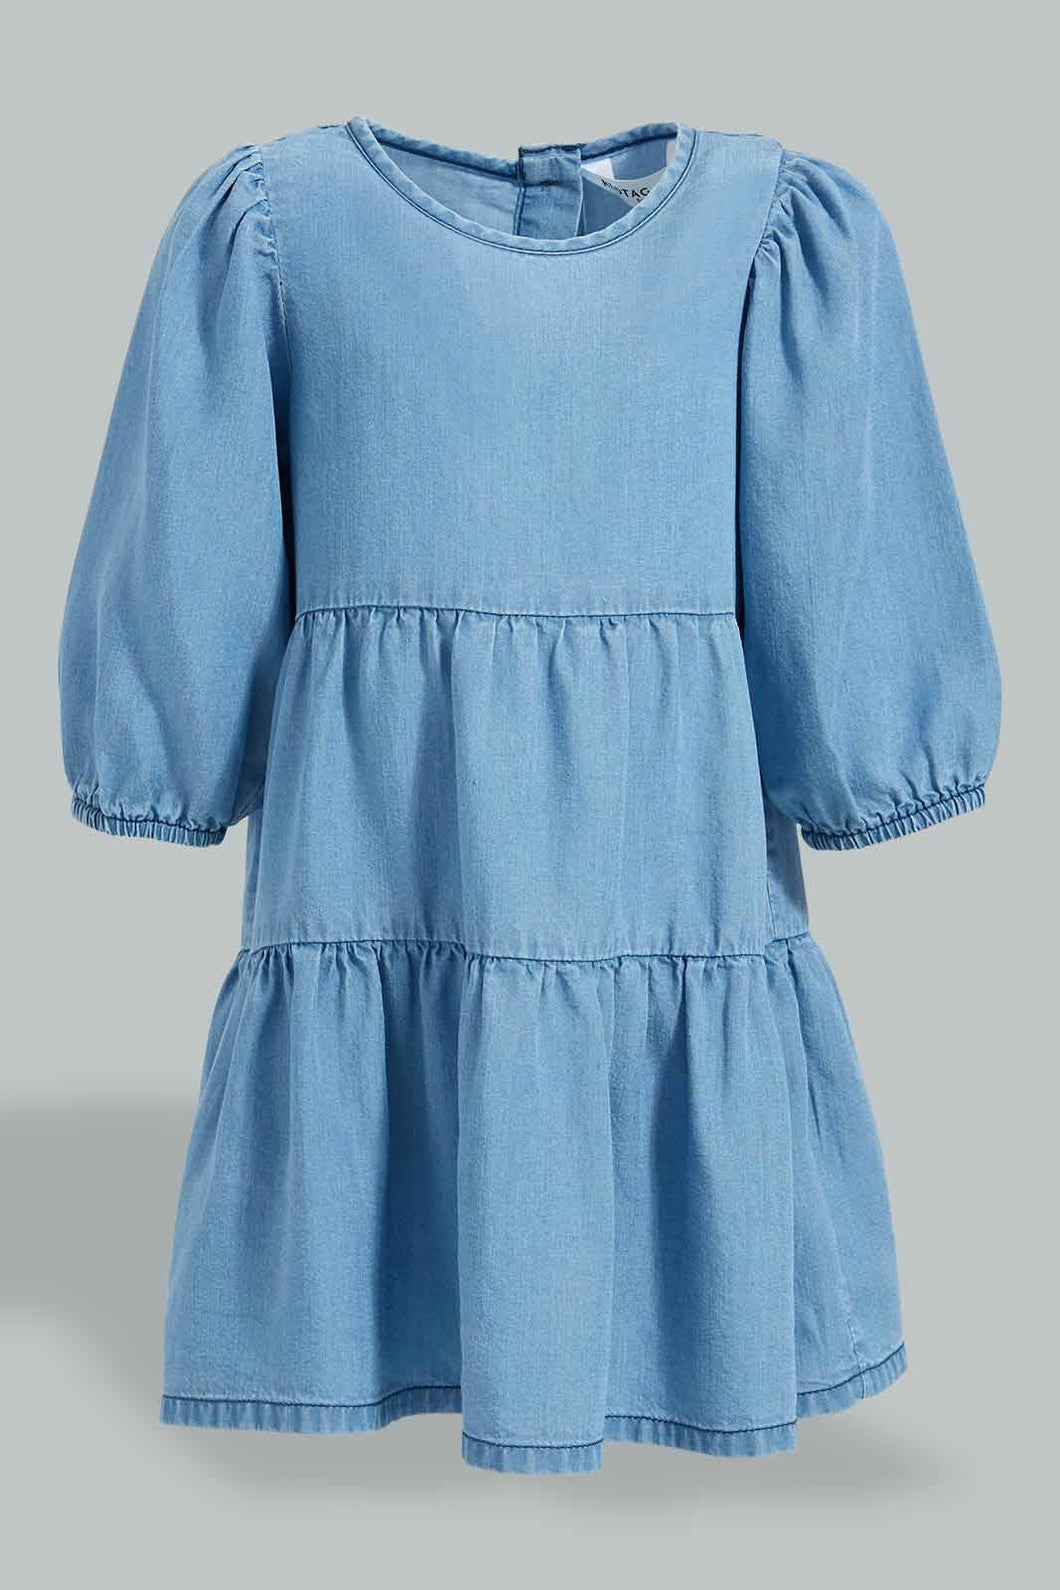 Blue Long Ruffle Sleeves Dress فستان باللون الأزرق بأكمام نافشة